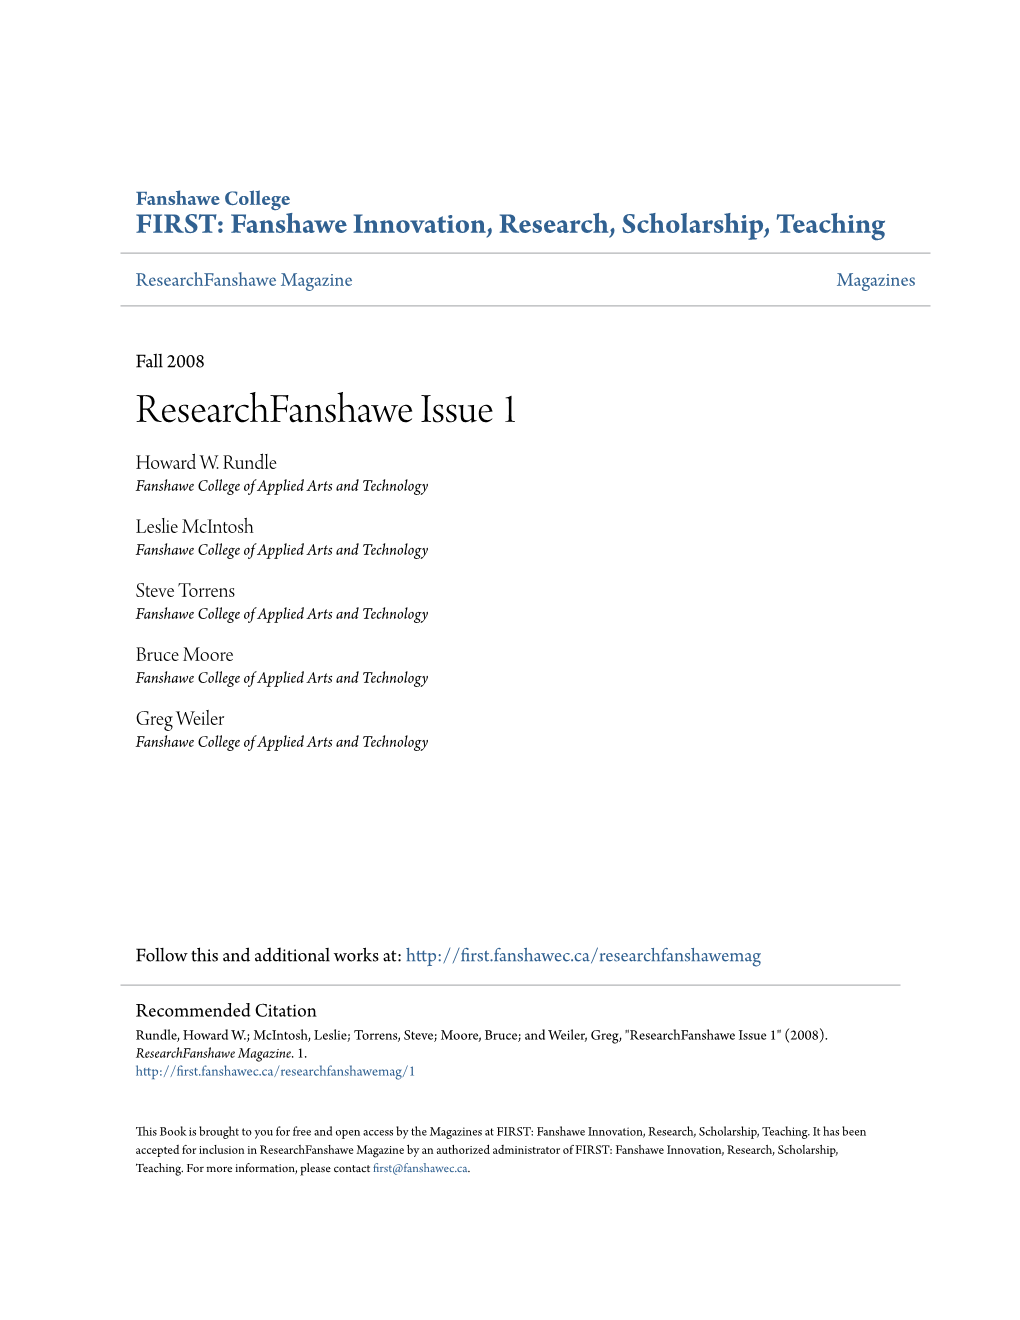 Researchfanshawe Issue 1 Howard W